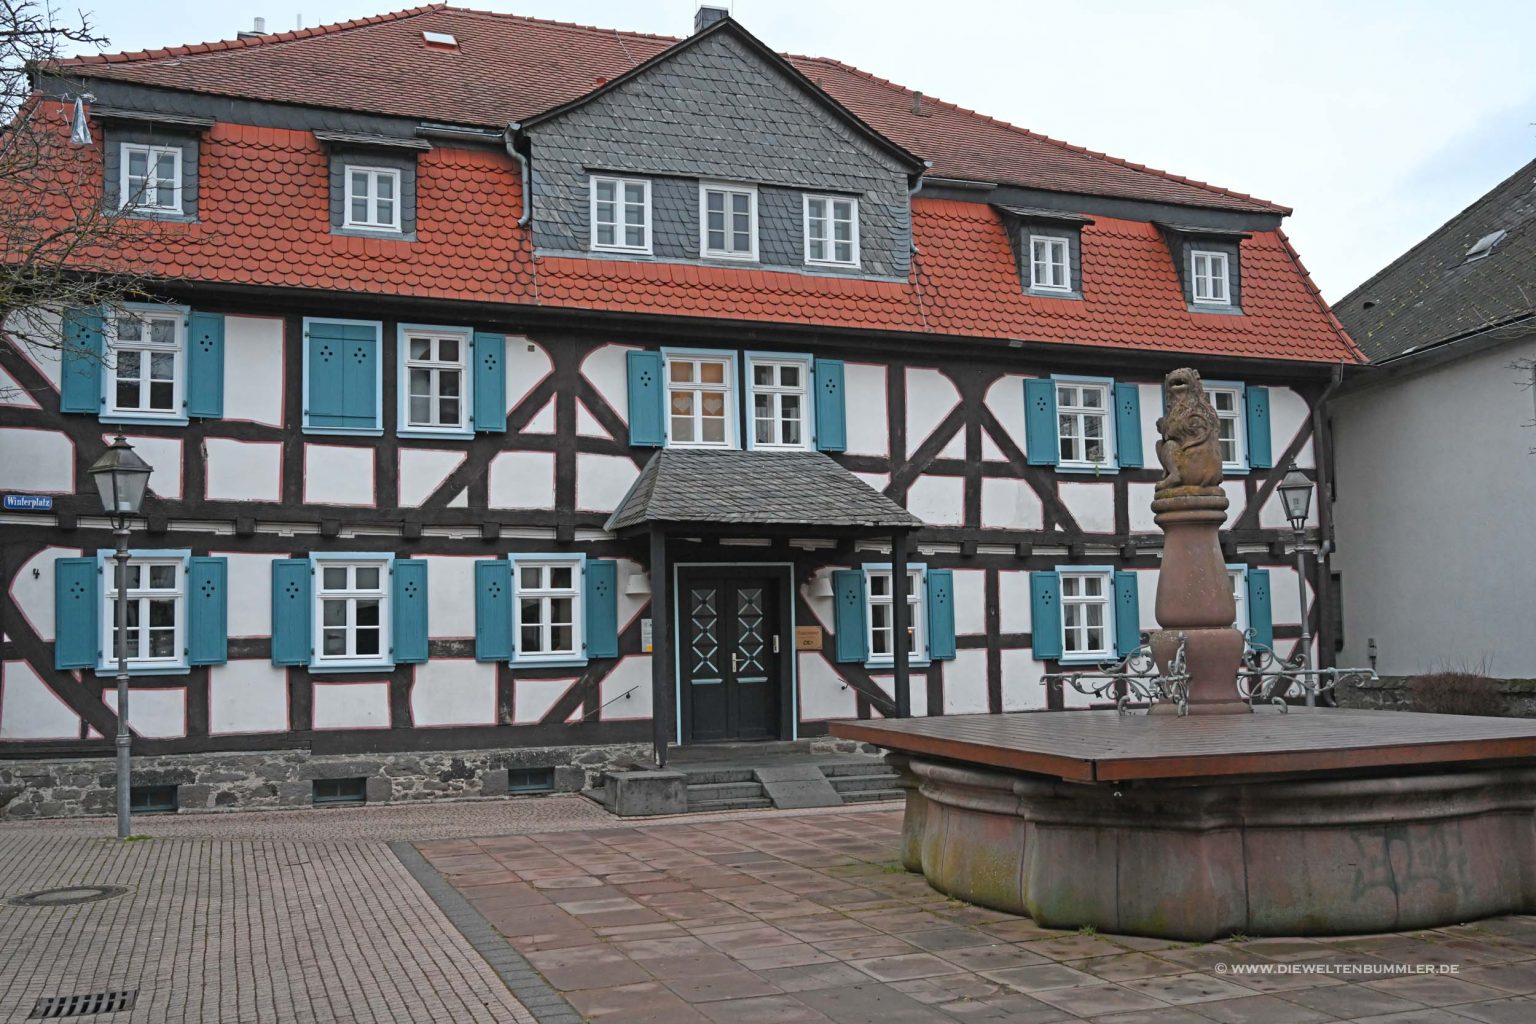 Altstadt von Grünberg